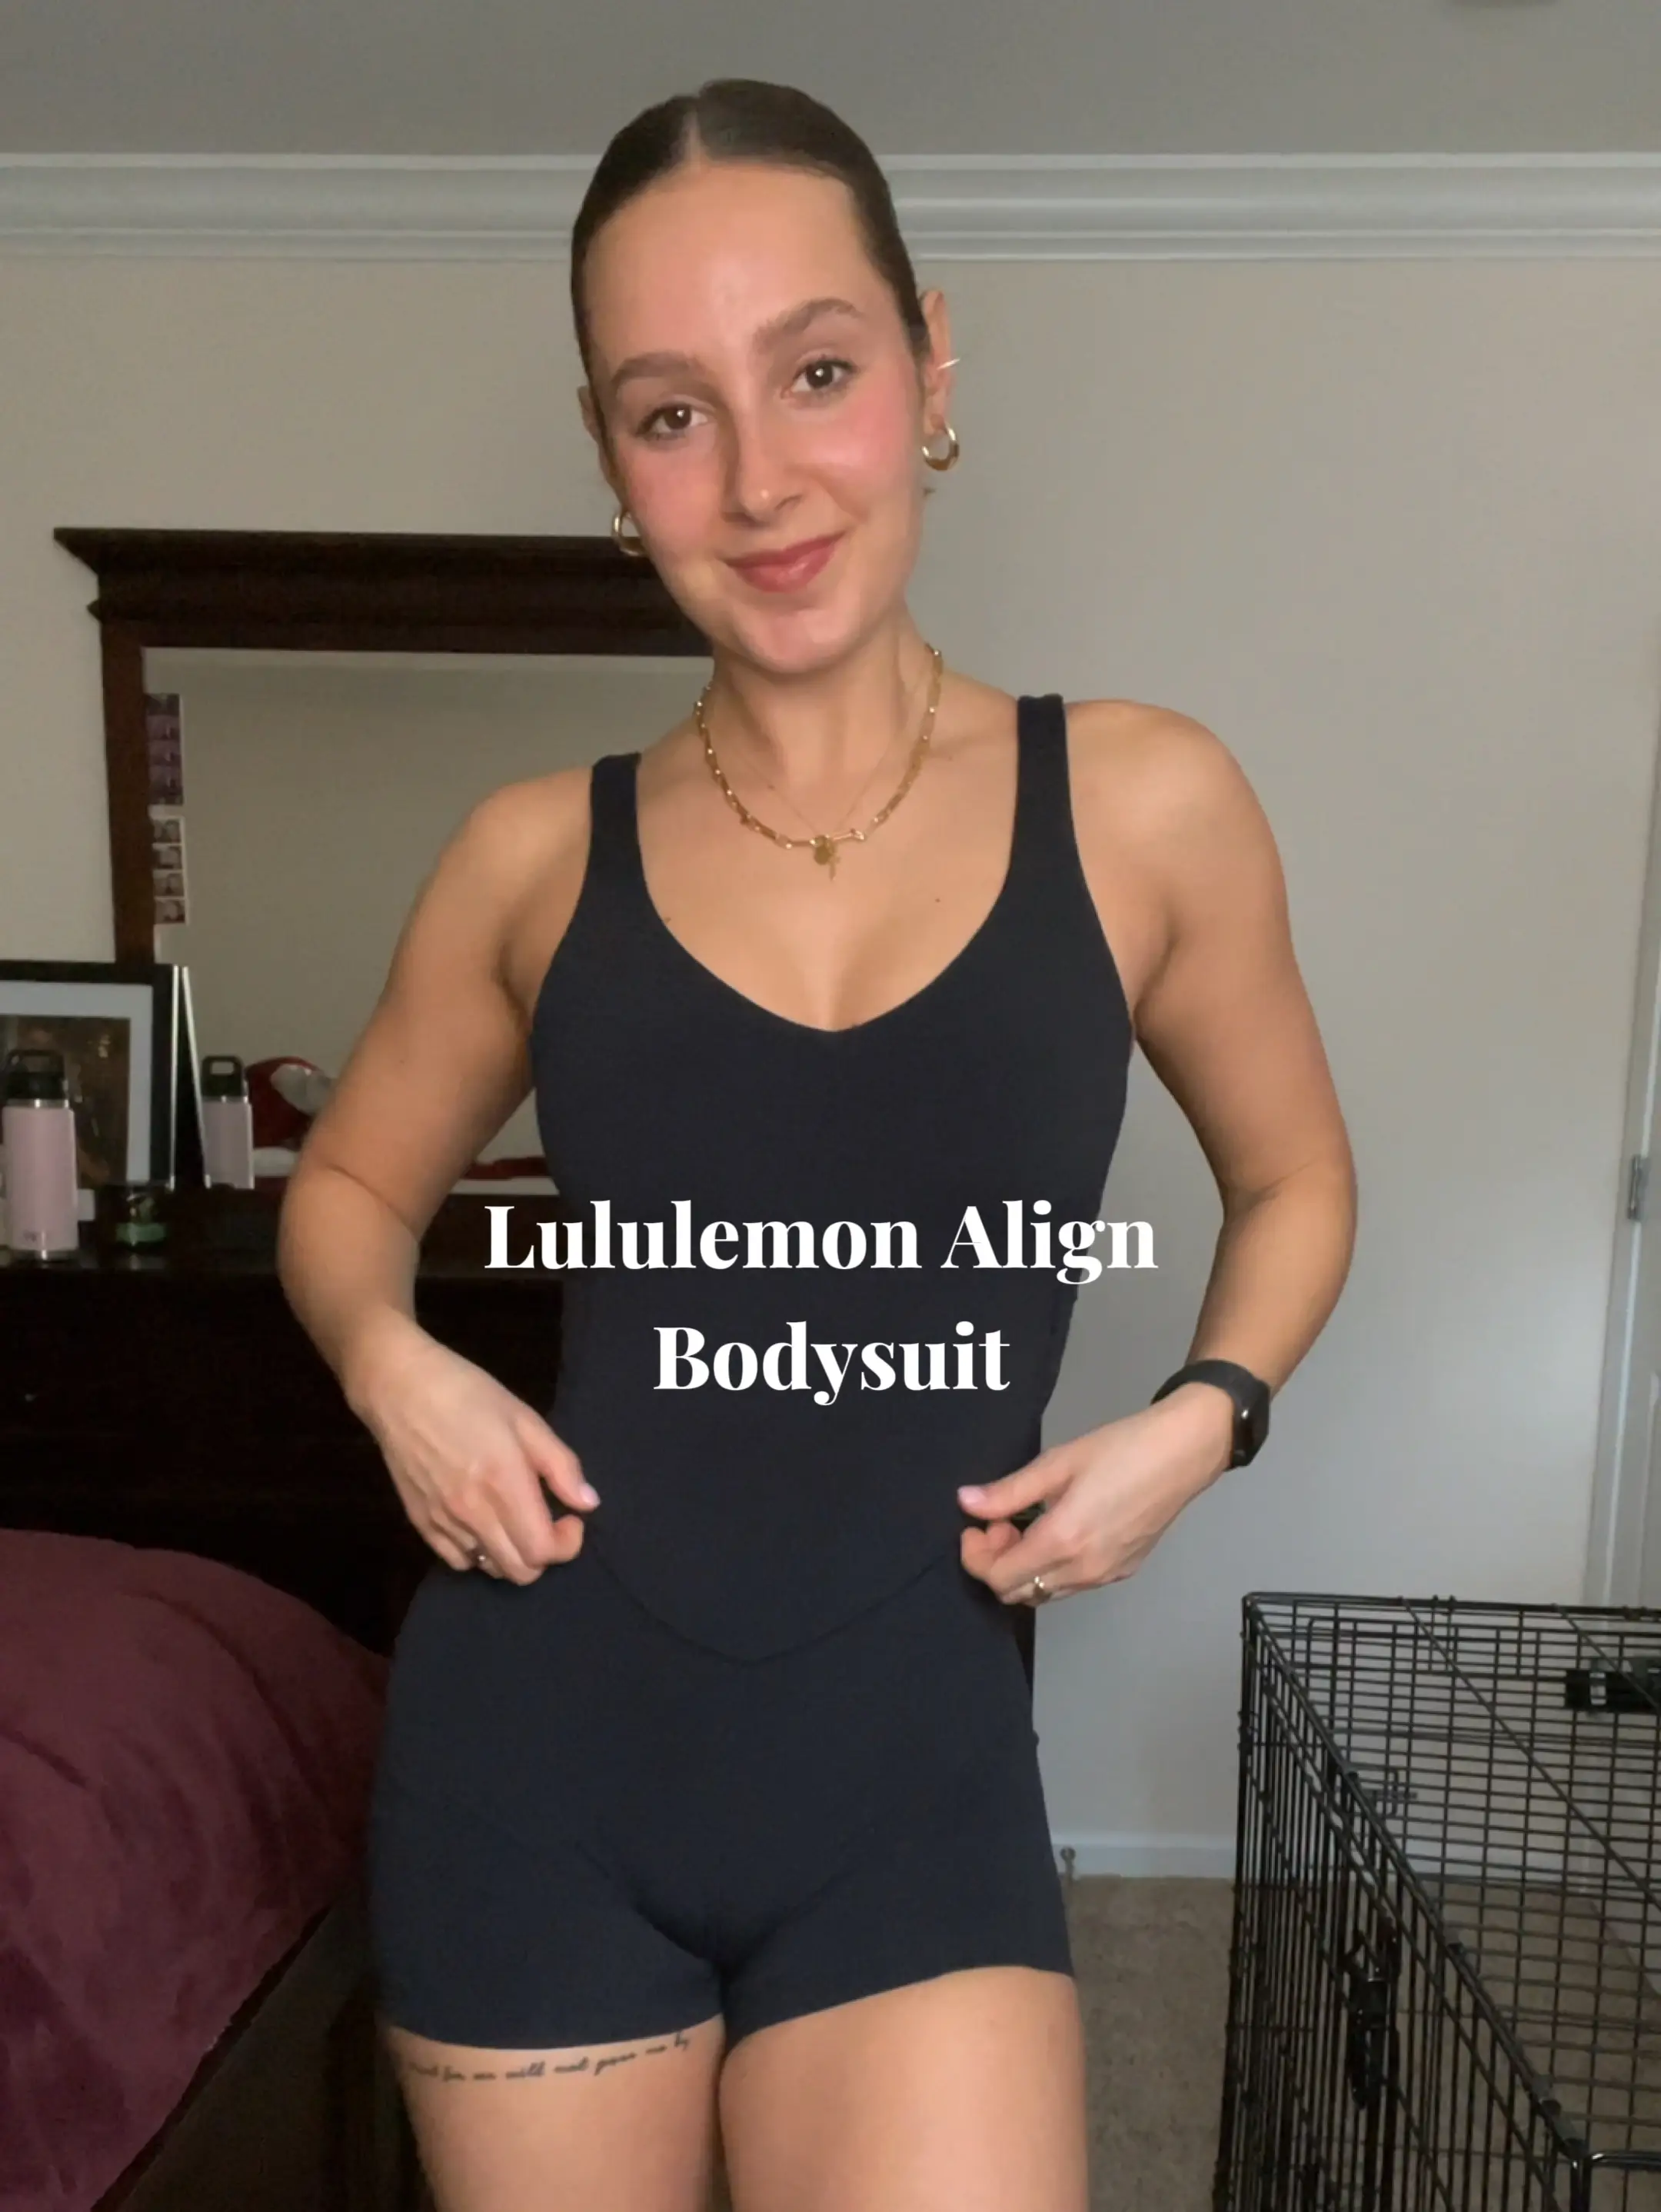 Lululemon Align Bodysuit, Video published by jocelynpodolski